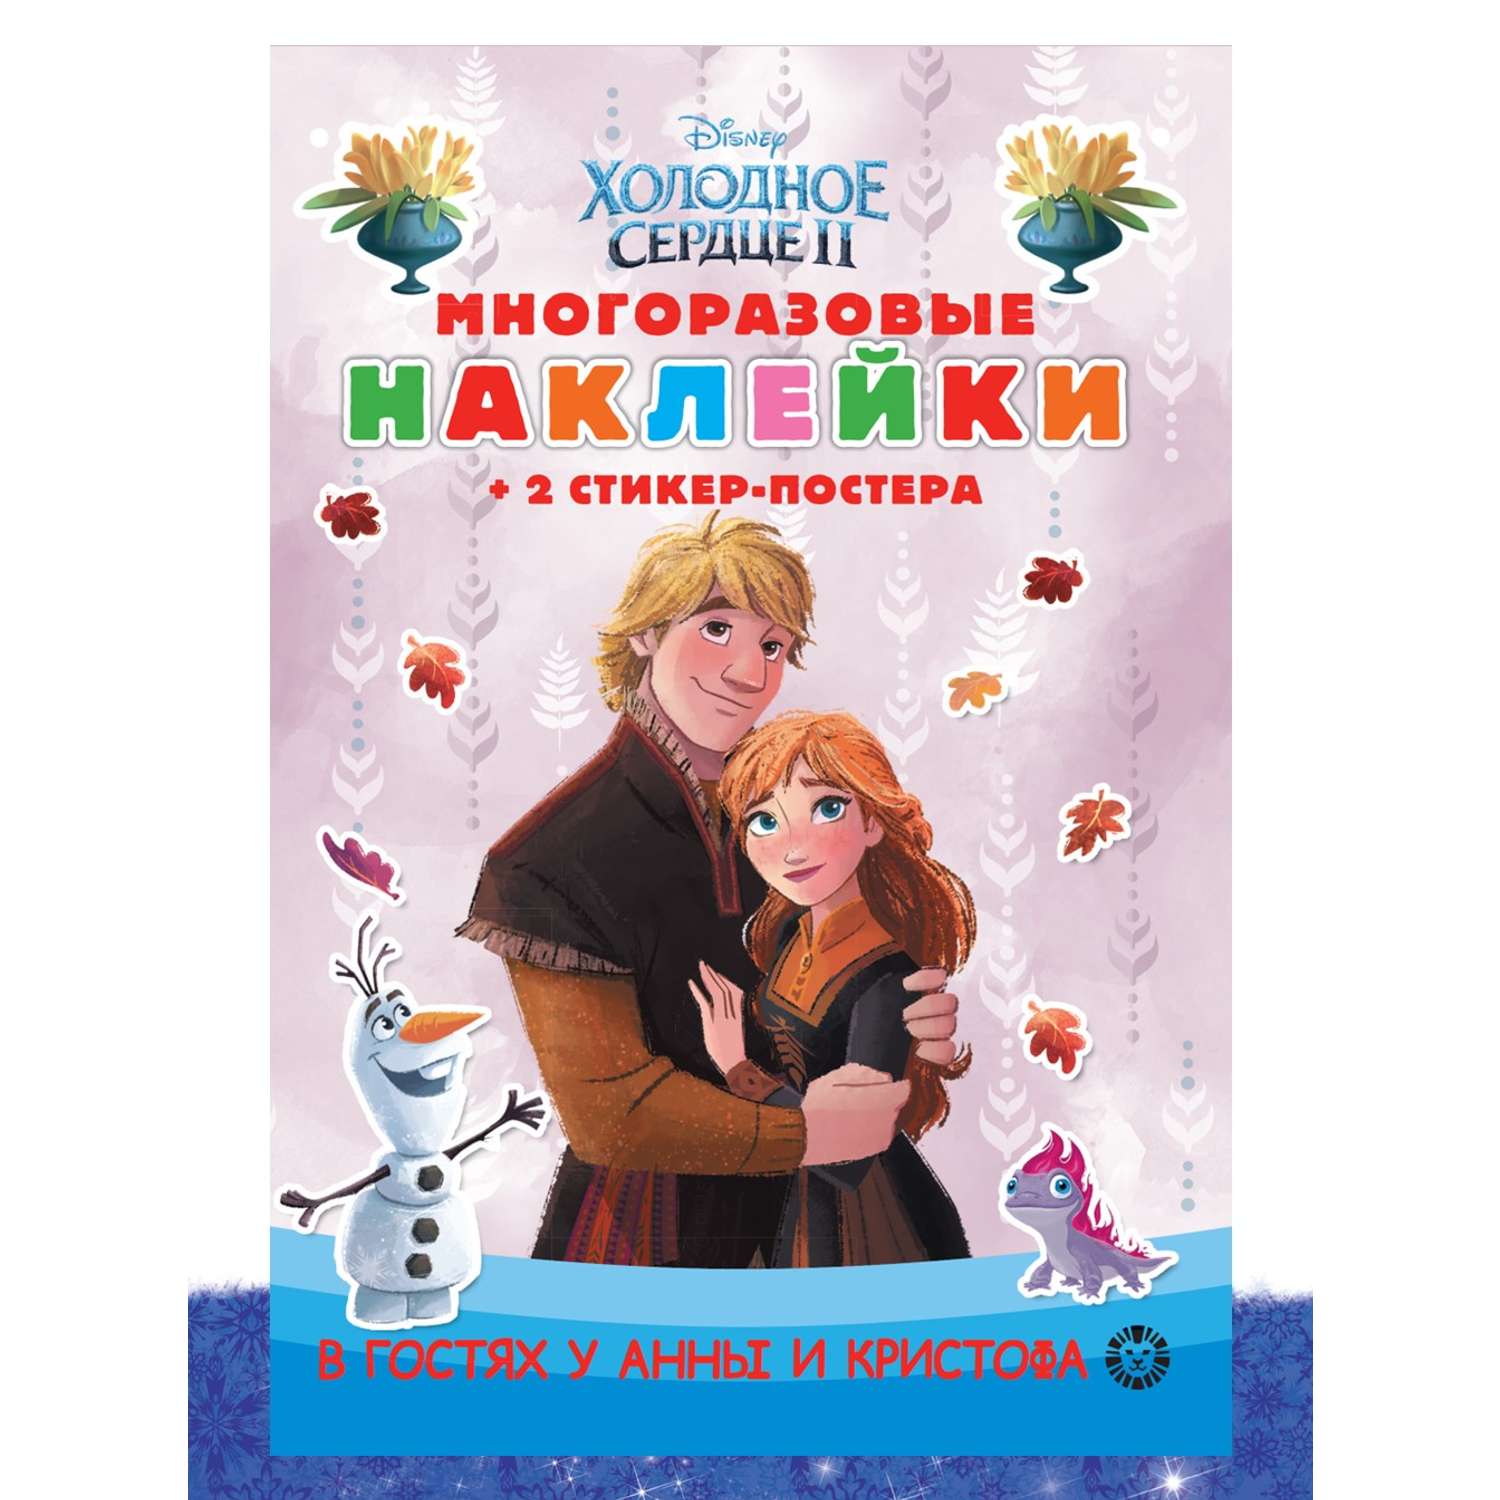 Комплект Disney Холодное сердце Раскраска+ Сборник настольных игр + Многоразовые наклейки - фото 2